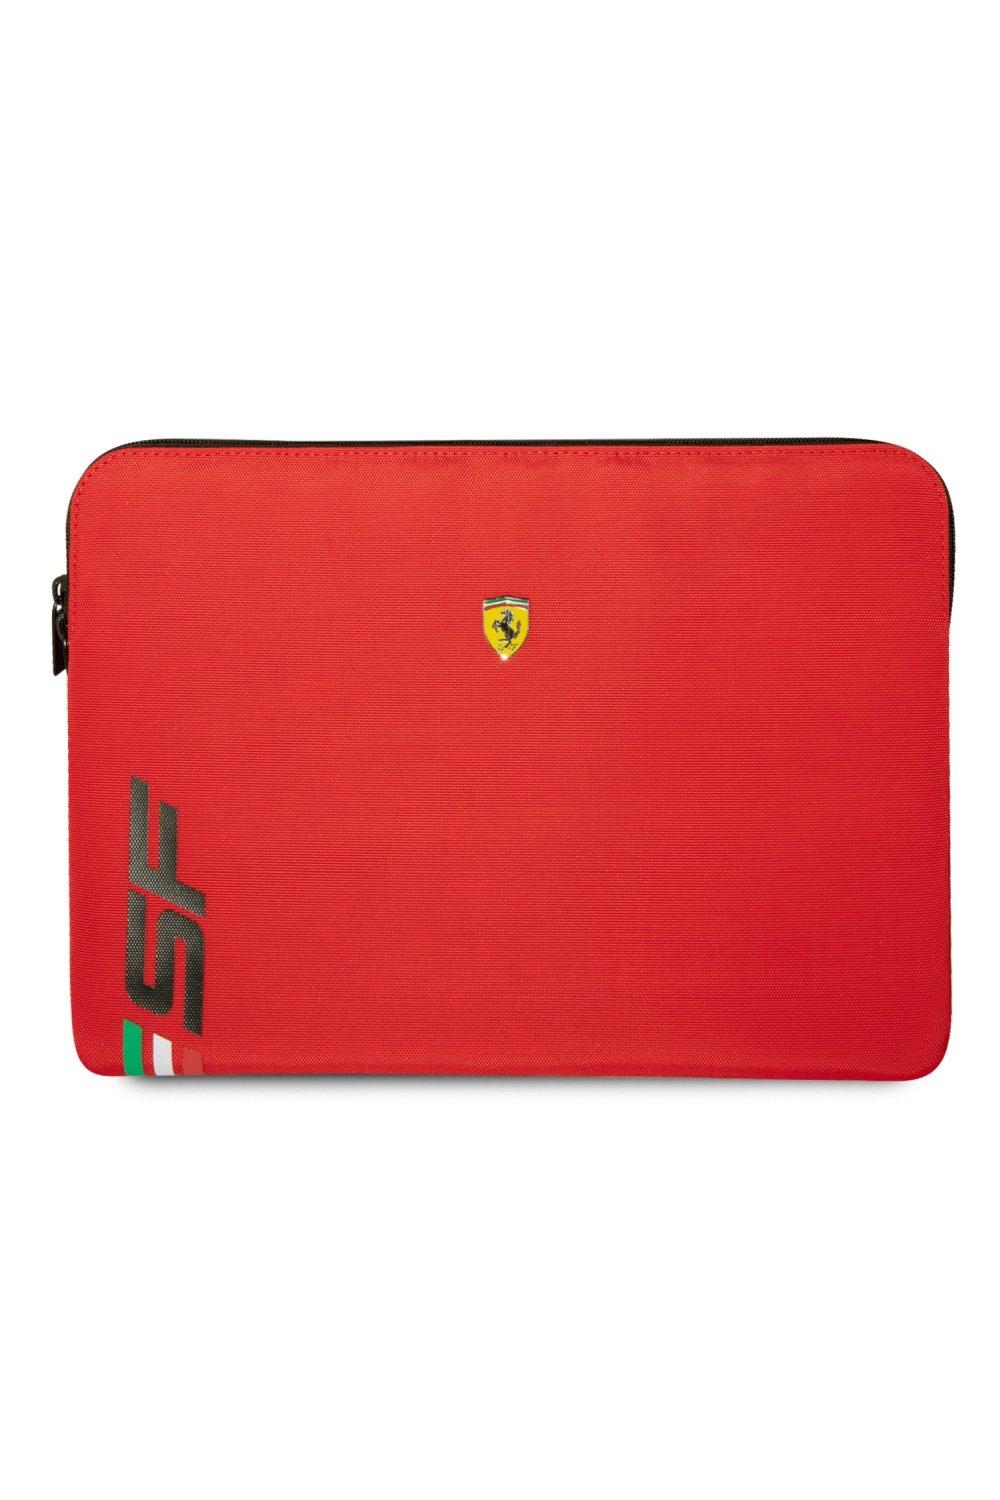 Чехол для ноутбука 14 дюймов из искусственной кожи с логотипом Sf Ferrari, красный ferrari мяч футбольный ferrari р 5 цвет чёрный